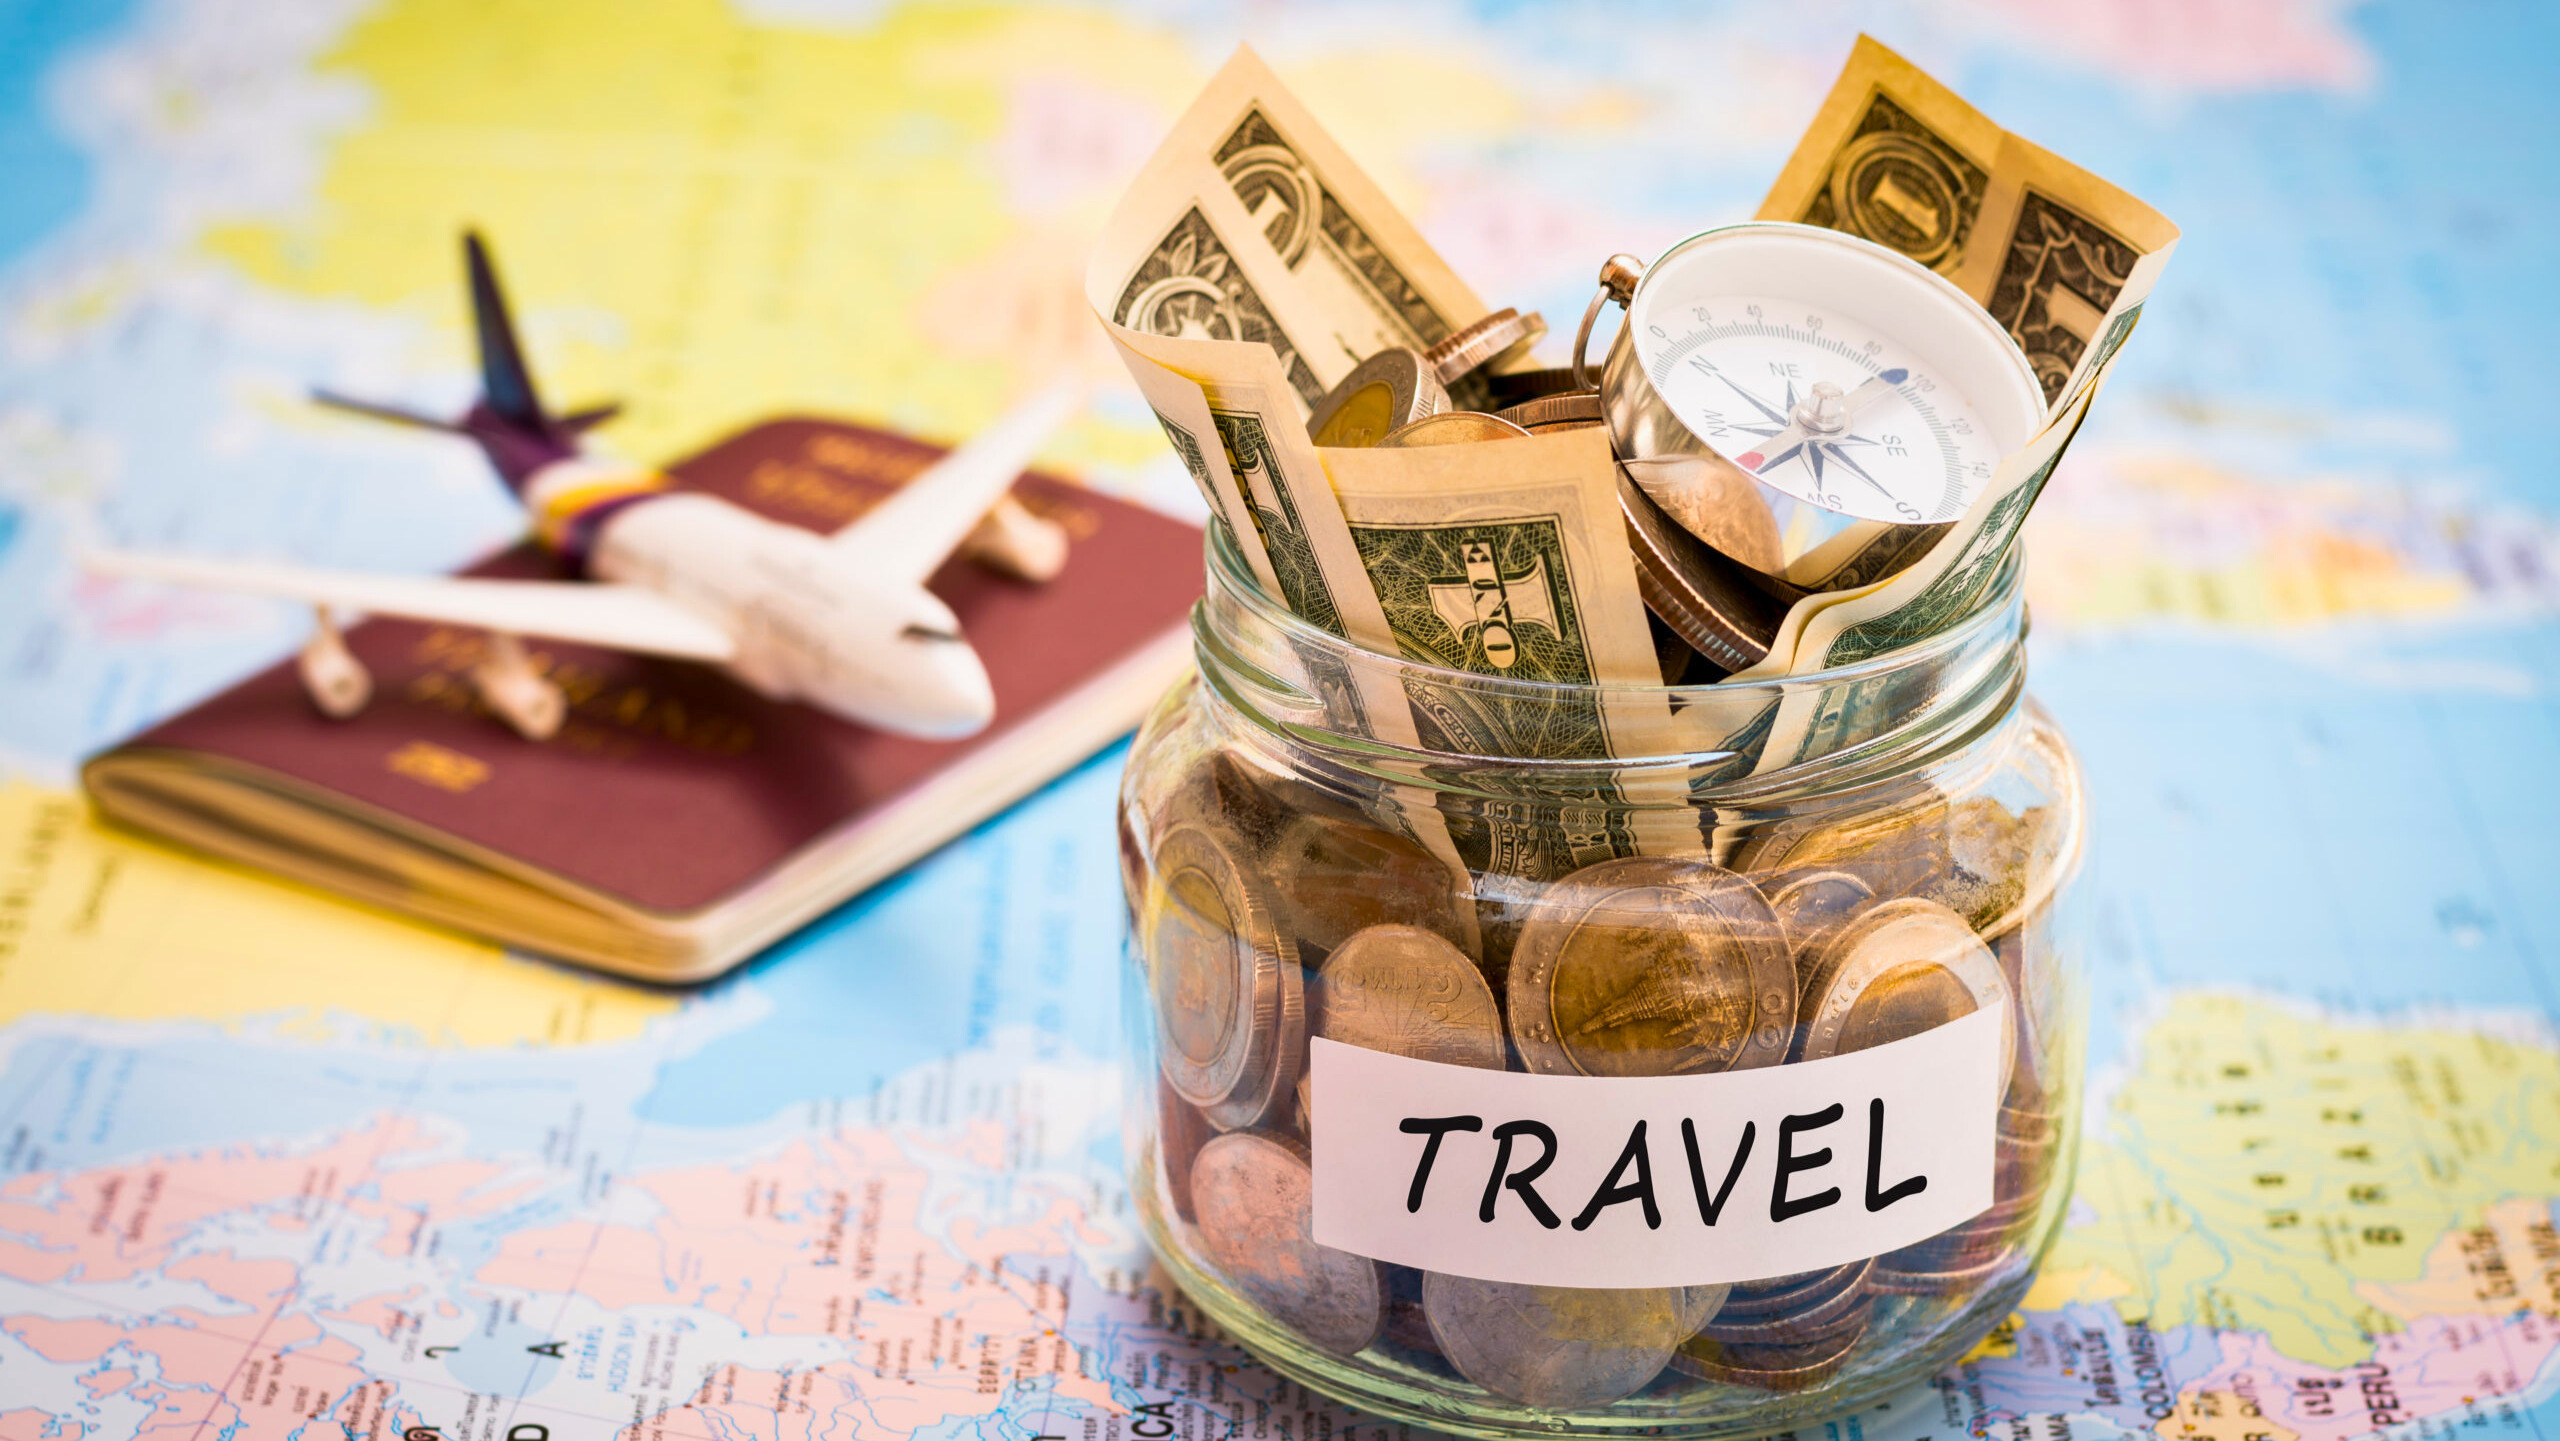 Travelling is expensive. Коплю на путешествия. Деньги. Коплю на отпуск. Сбережения для путешествия.